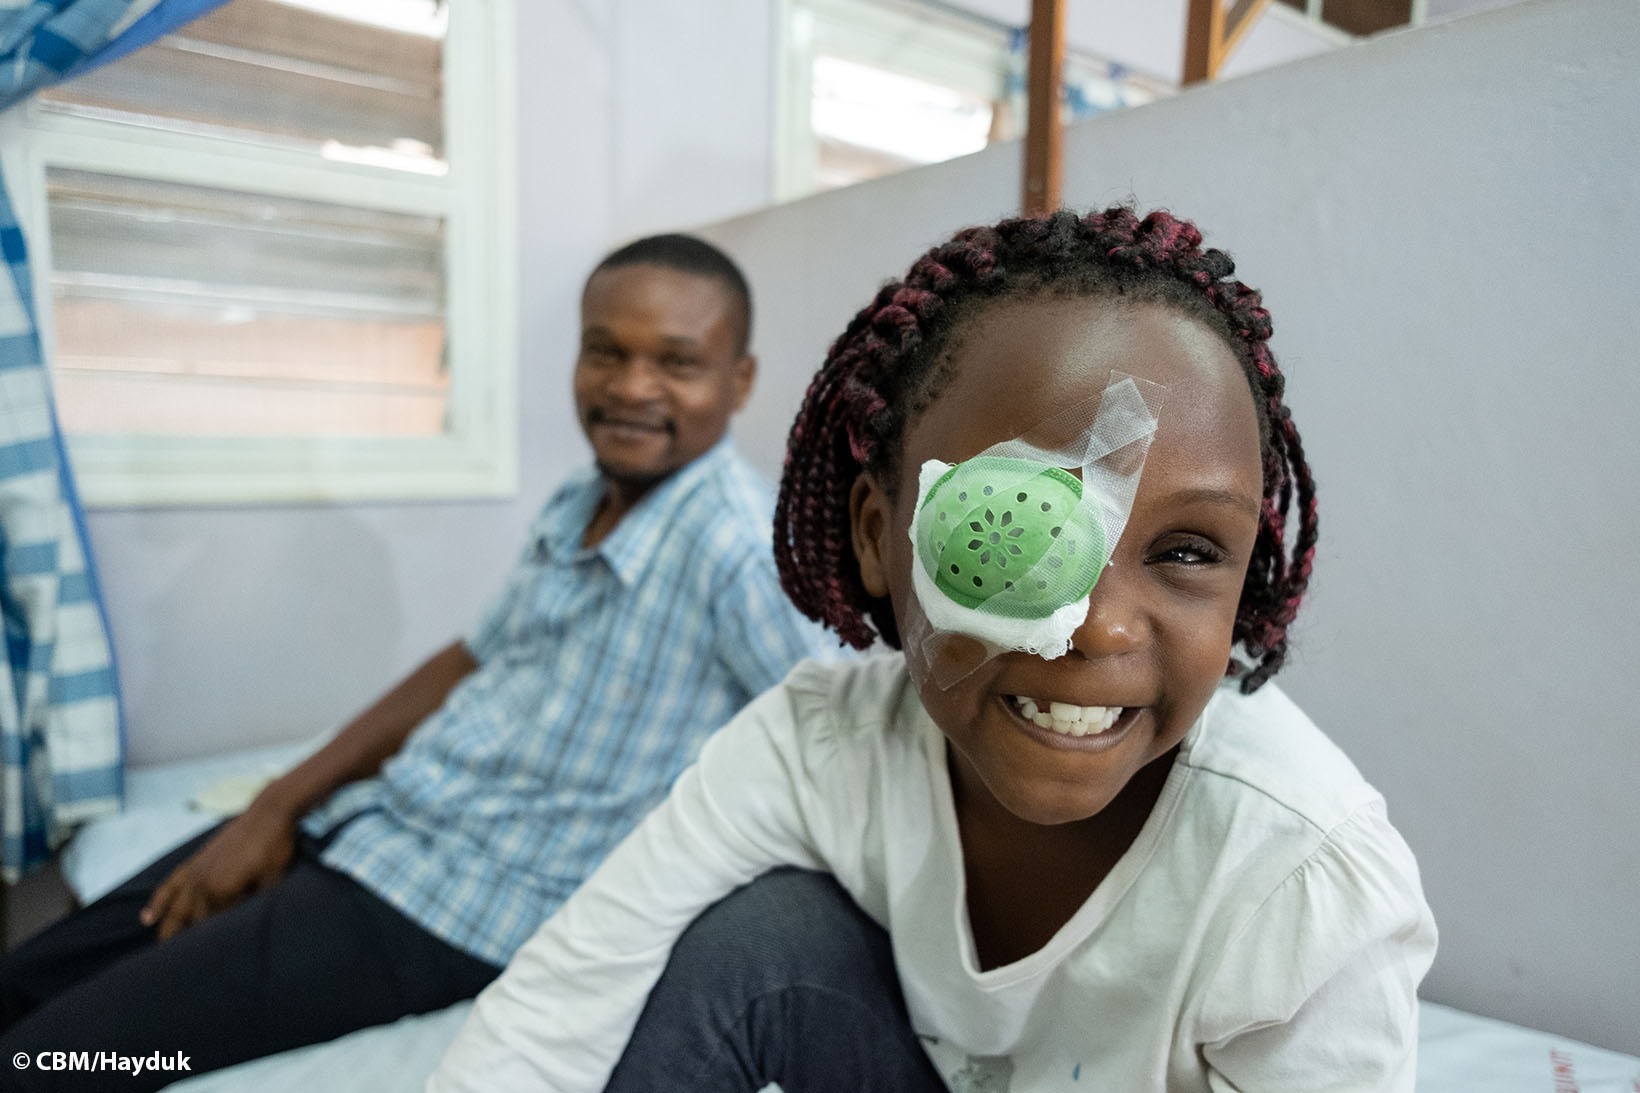 Ein Mädchen aus Uganda trägt einen Augenverband und lächelt, ihr Vater im Hintergrund lächelt ebenso.